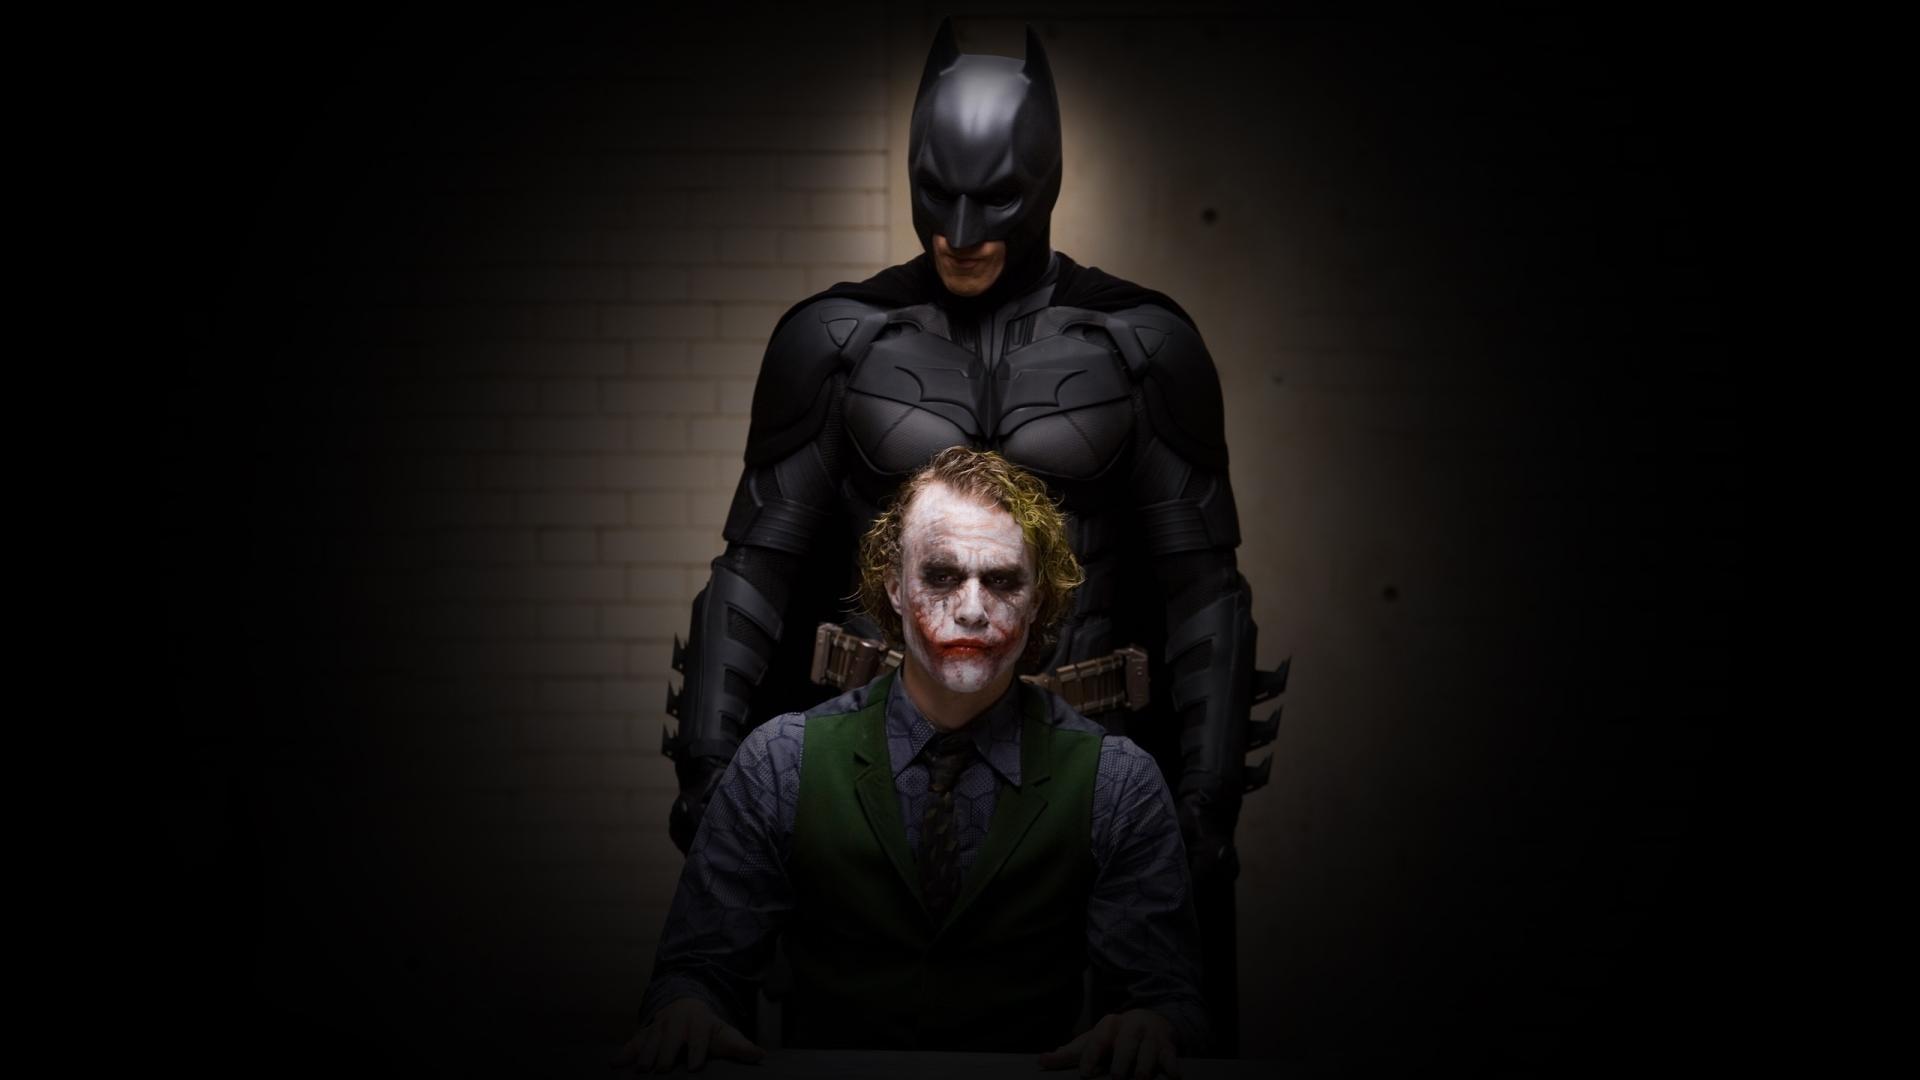 Wallpaper For > Batman Joker HD Wallpaper 1080p